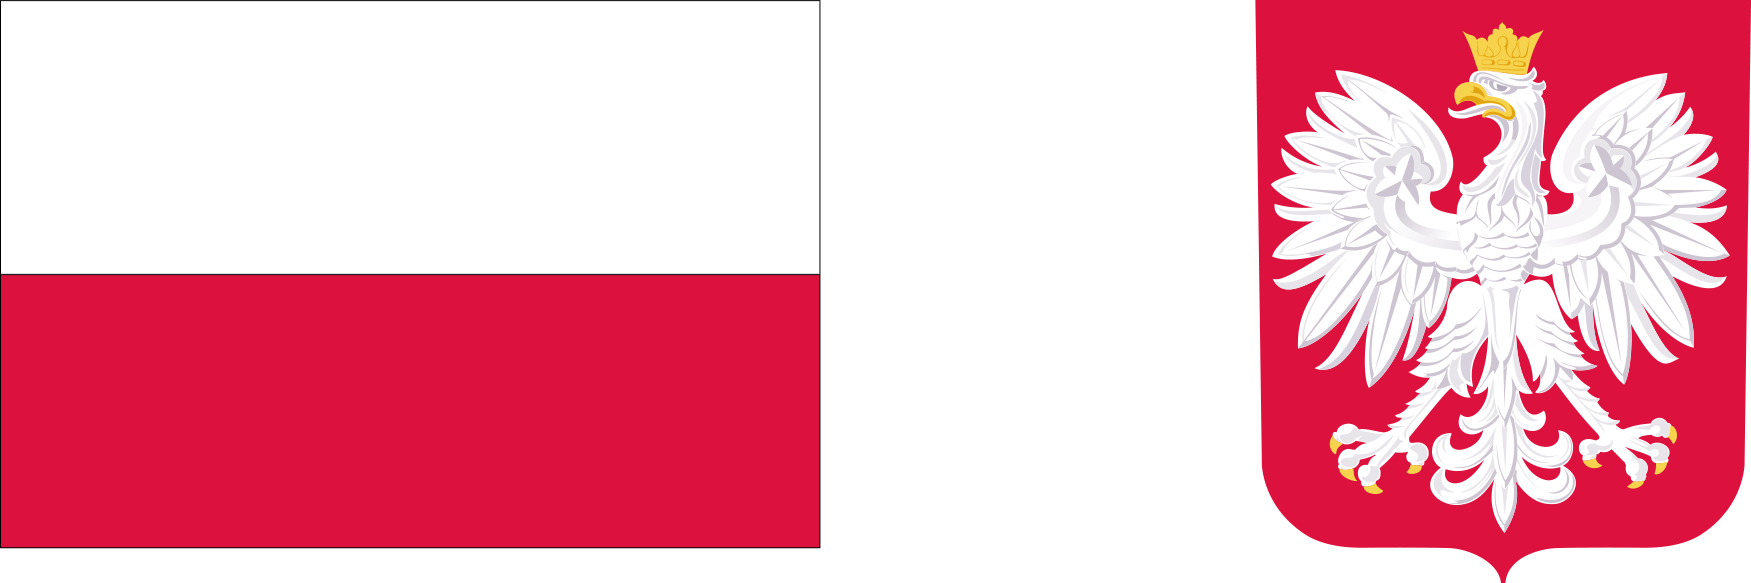 Flaga Polski podzielona poziomo na dwa pasy: górny biały i dolny czerwony, po prawej stronie herb Polski z białym orłem w koronie na czerwonym tle.